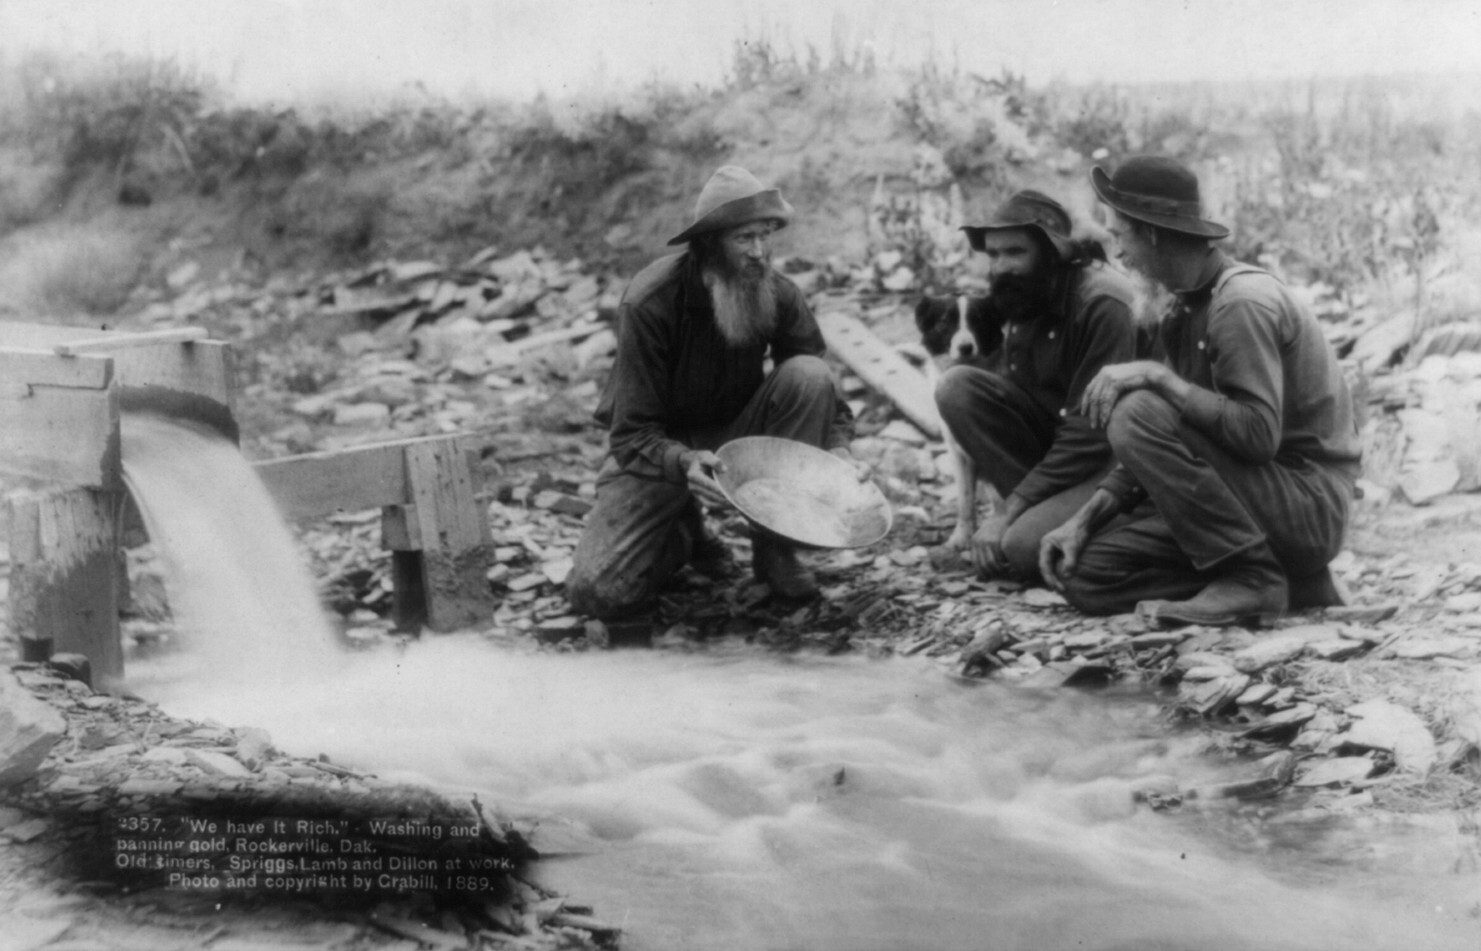 Золотоискатели, Южная Дакота, 1889. Фотограф Джон Грабилл